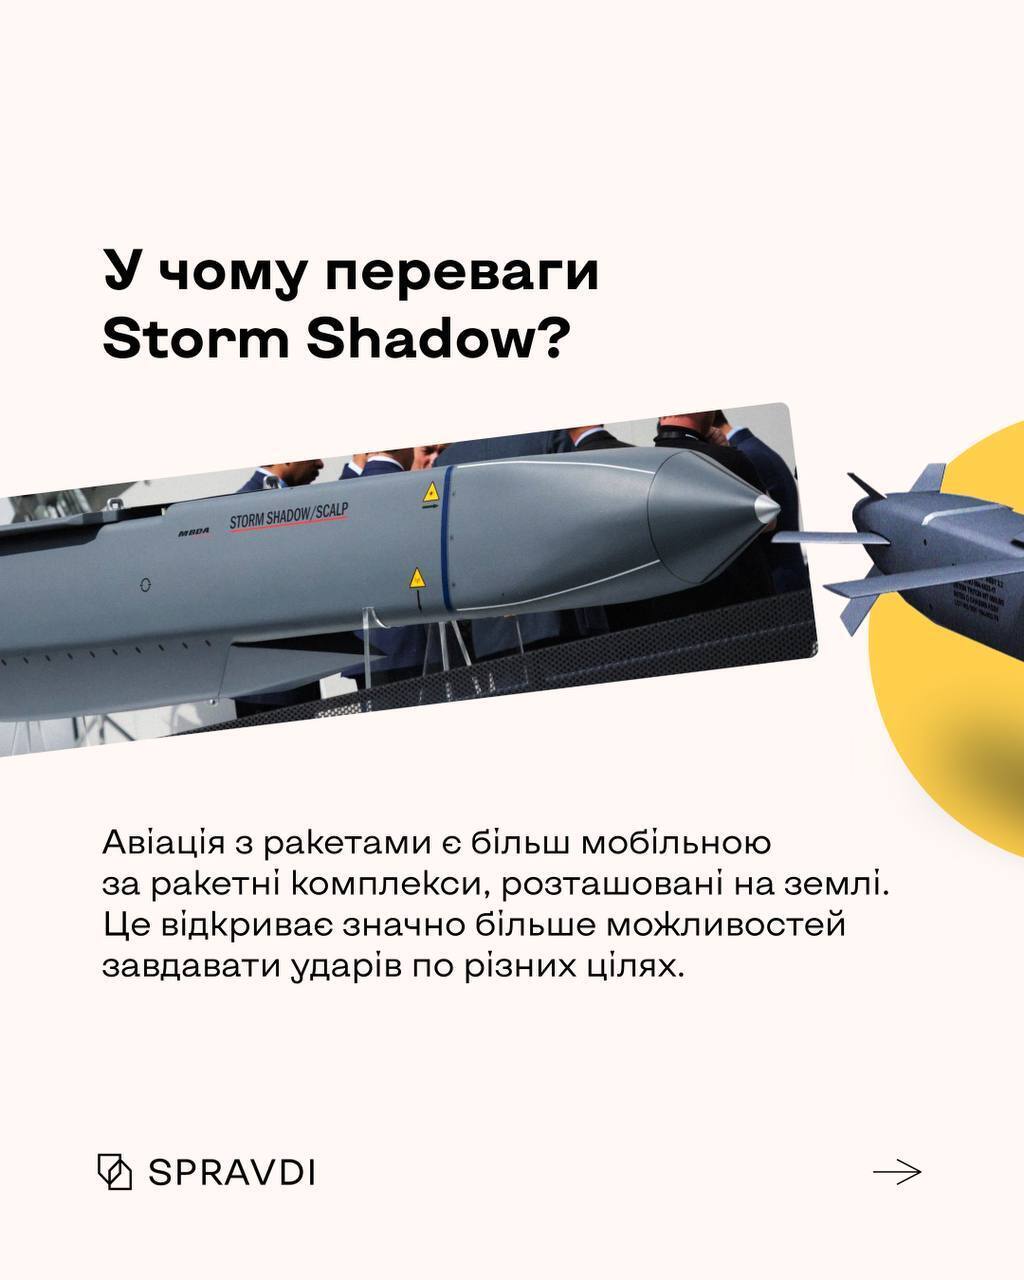 Британські далекобійні ракети Storm Shadow: на що здатна зброя, яку отримала Україна